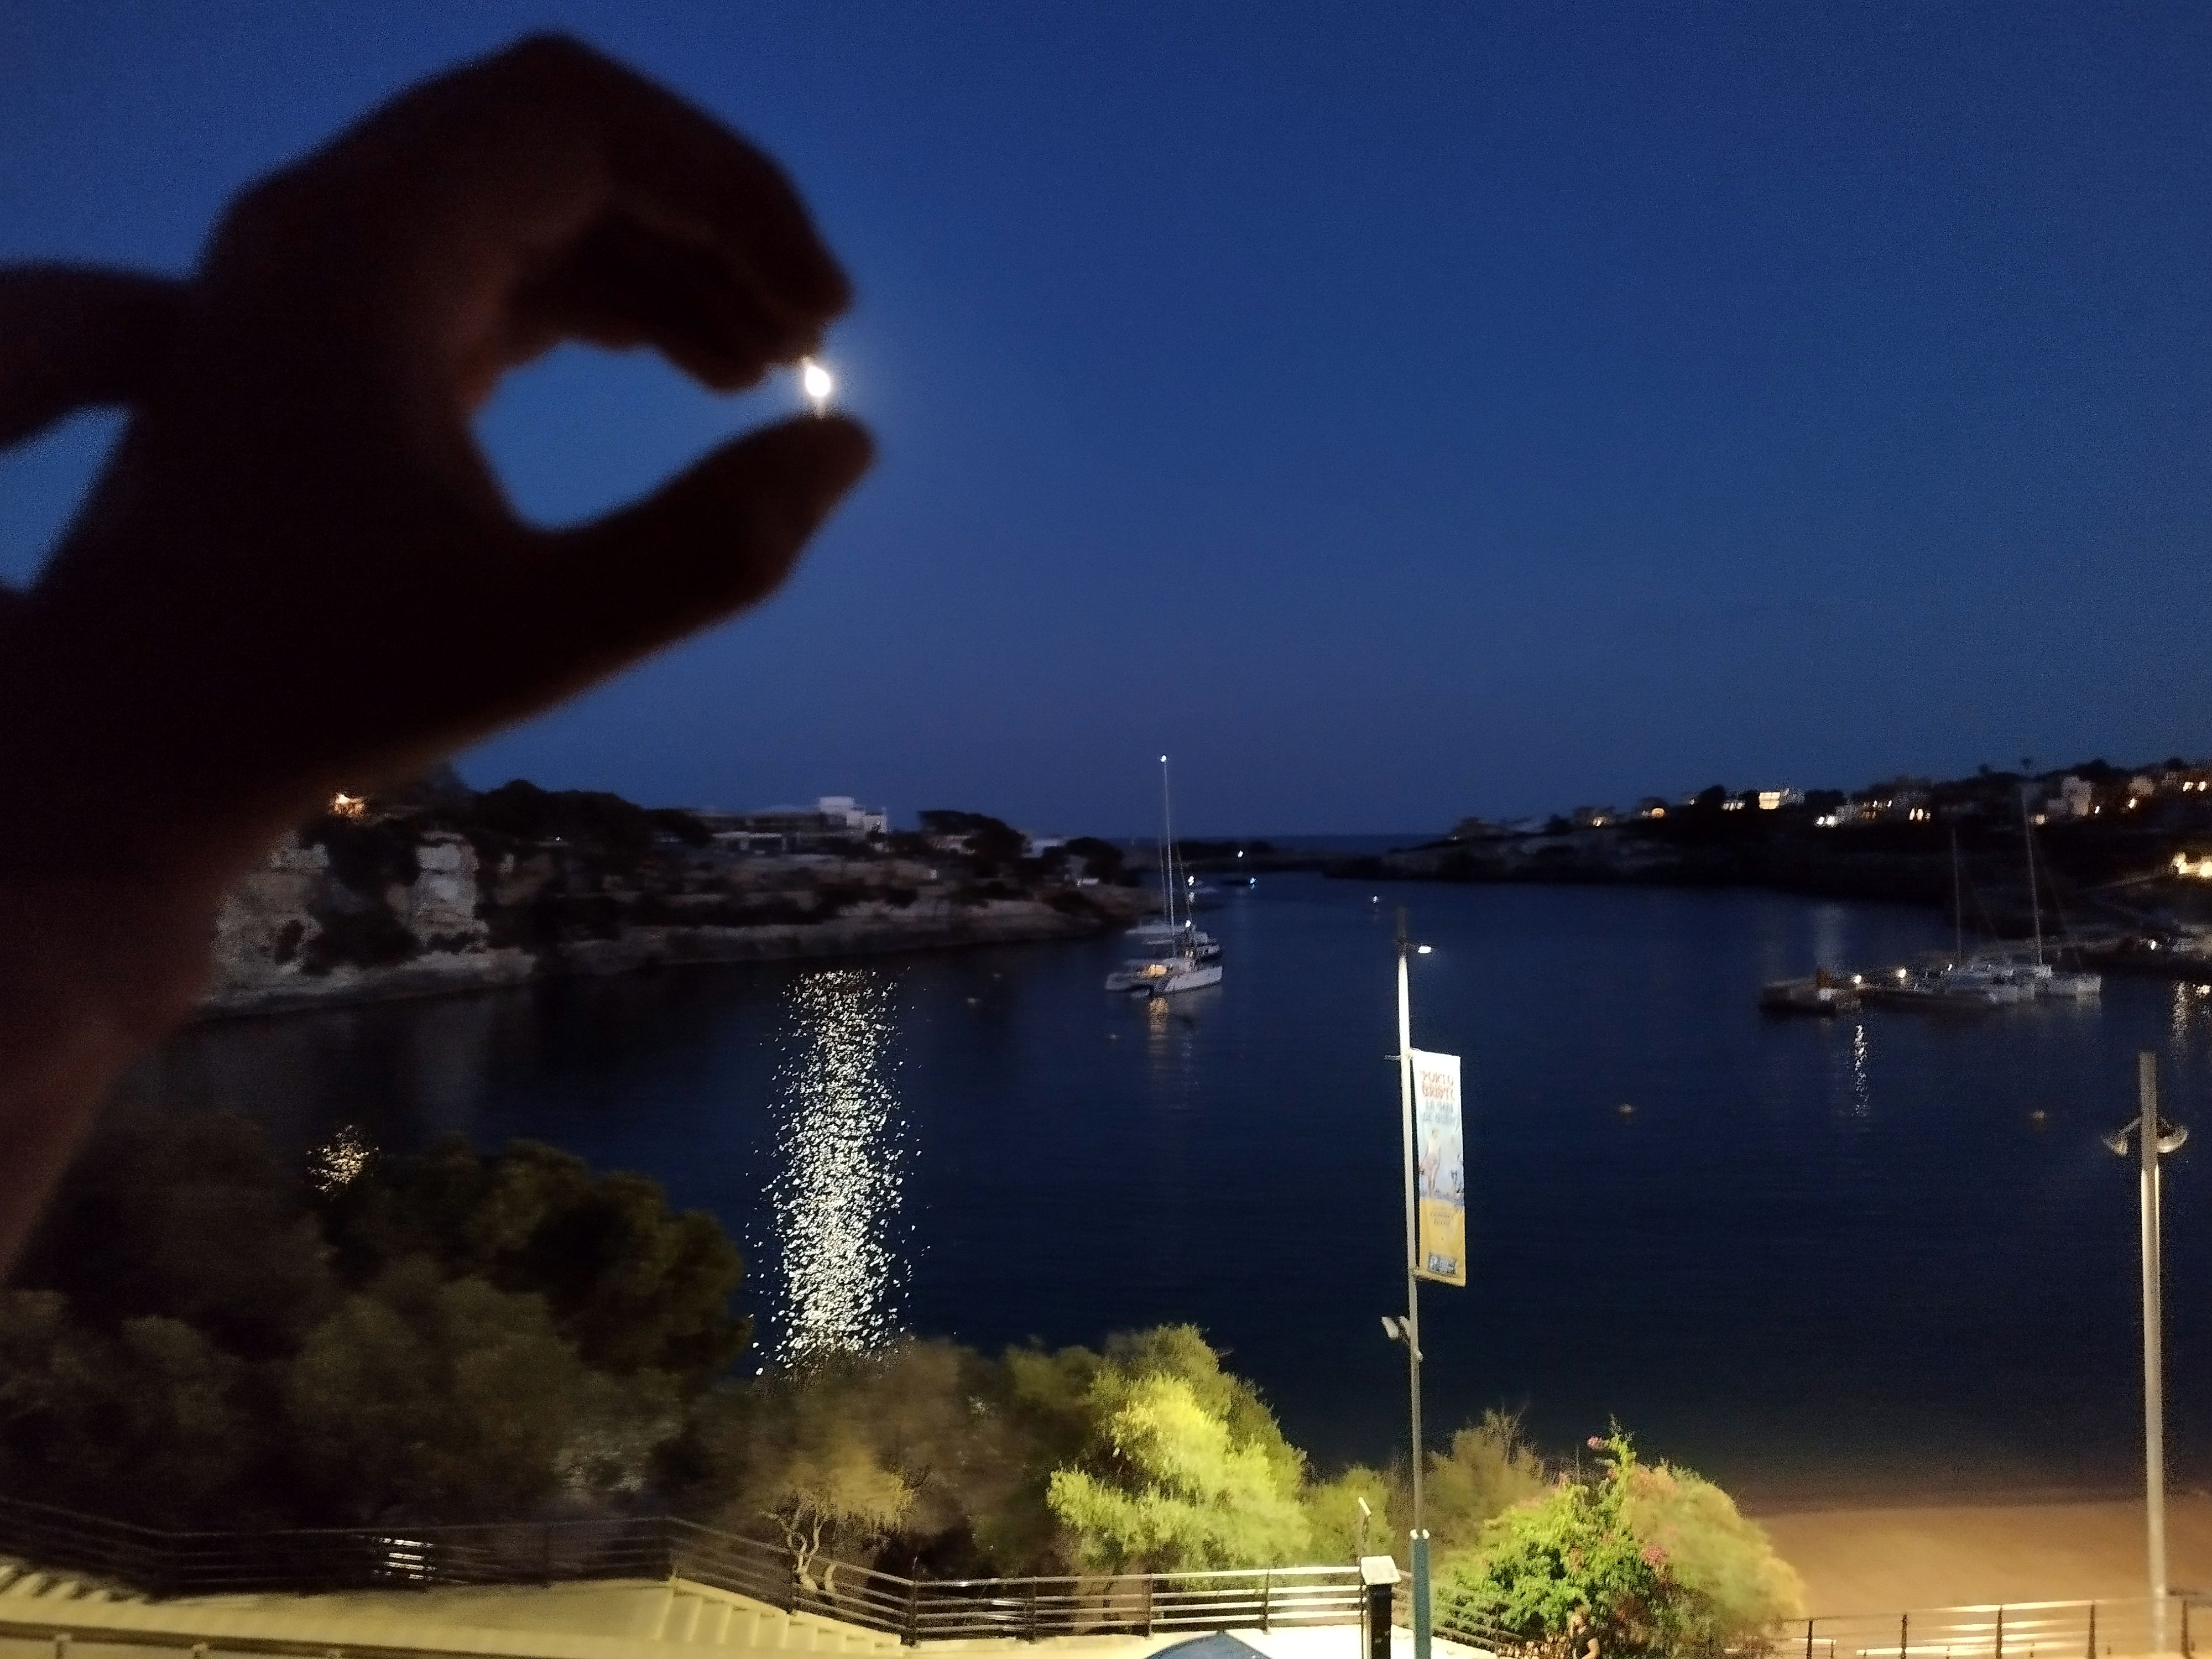 Capturant la lluna · Porto Cristo, Mallorca FOTO: MAGDALENA VADELL SUREDA